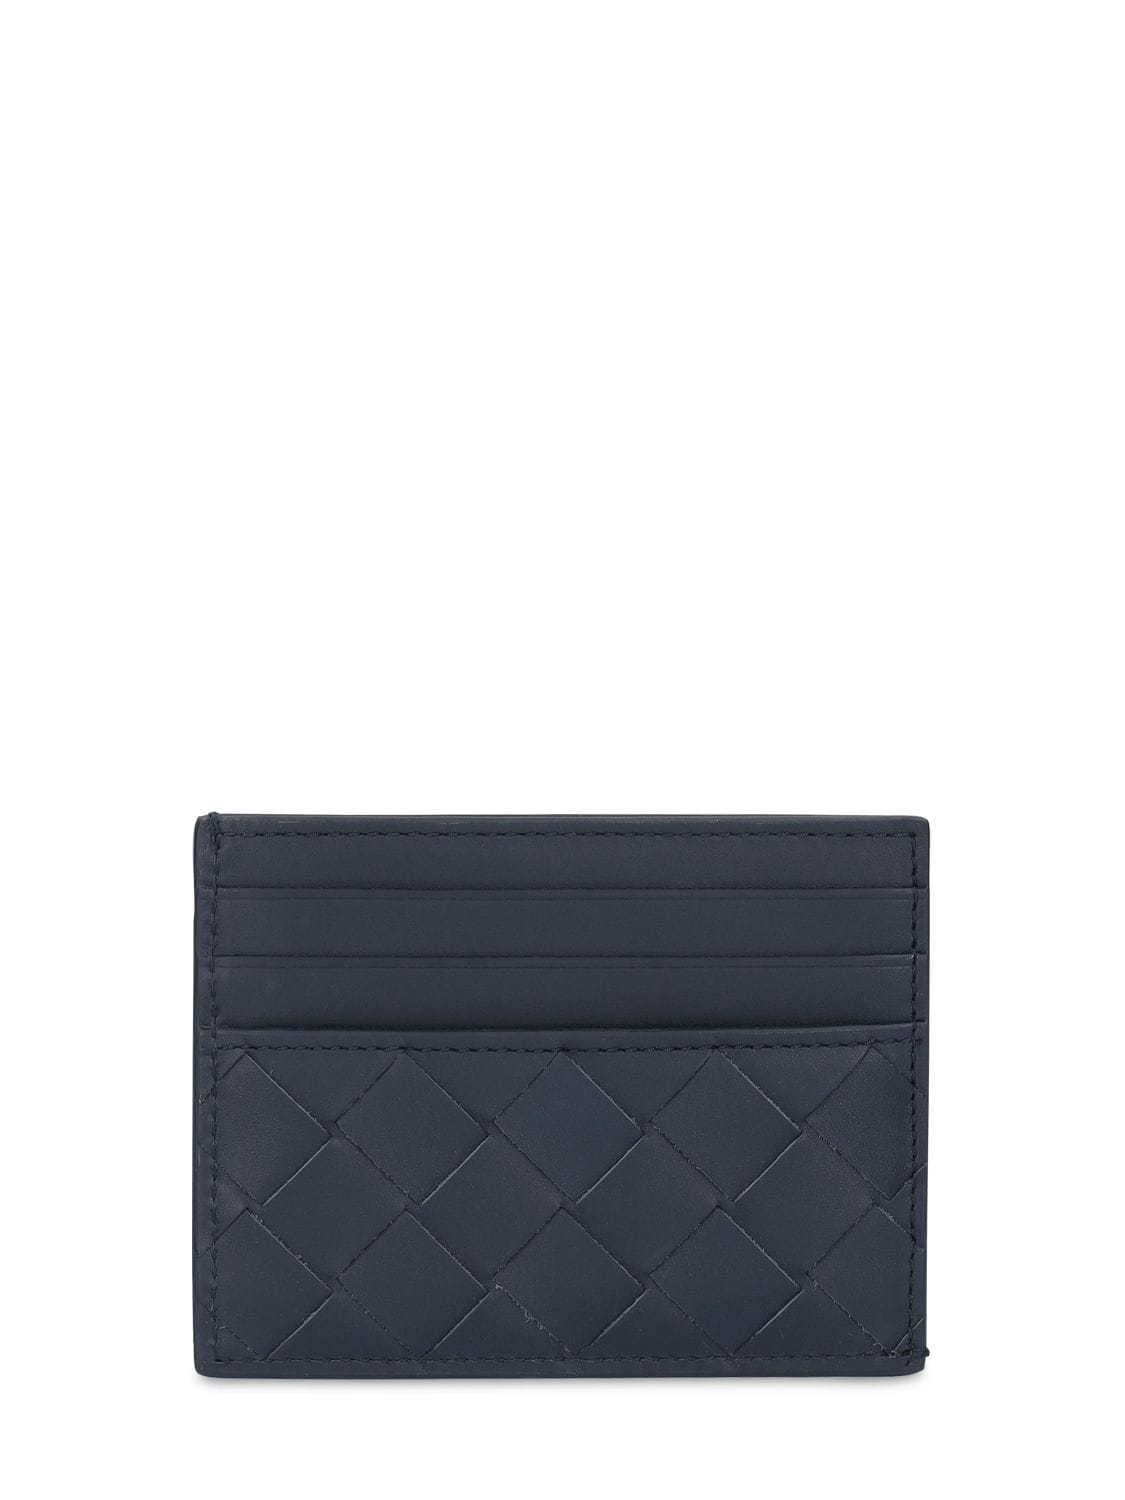 Bottega Veneta Intrecciato Leather Card Case In Dark Blue